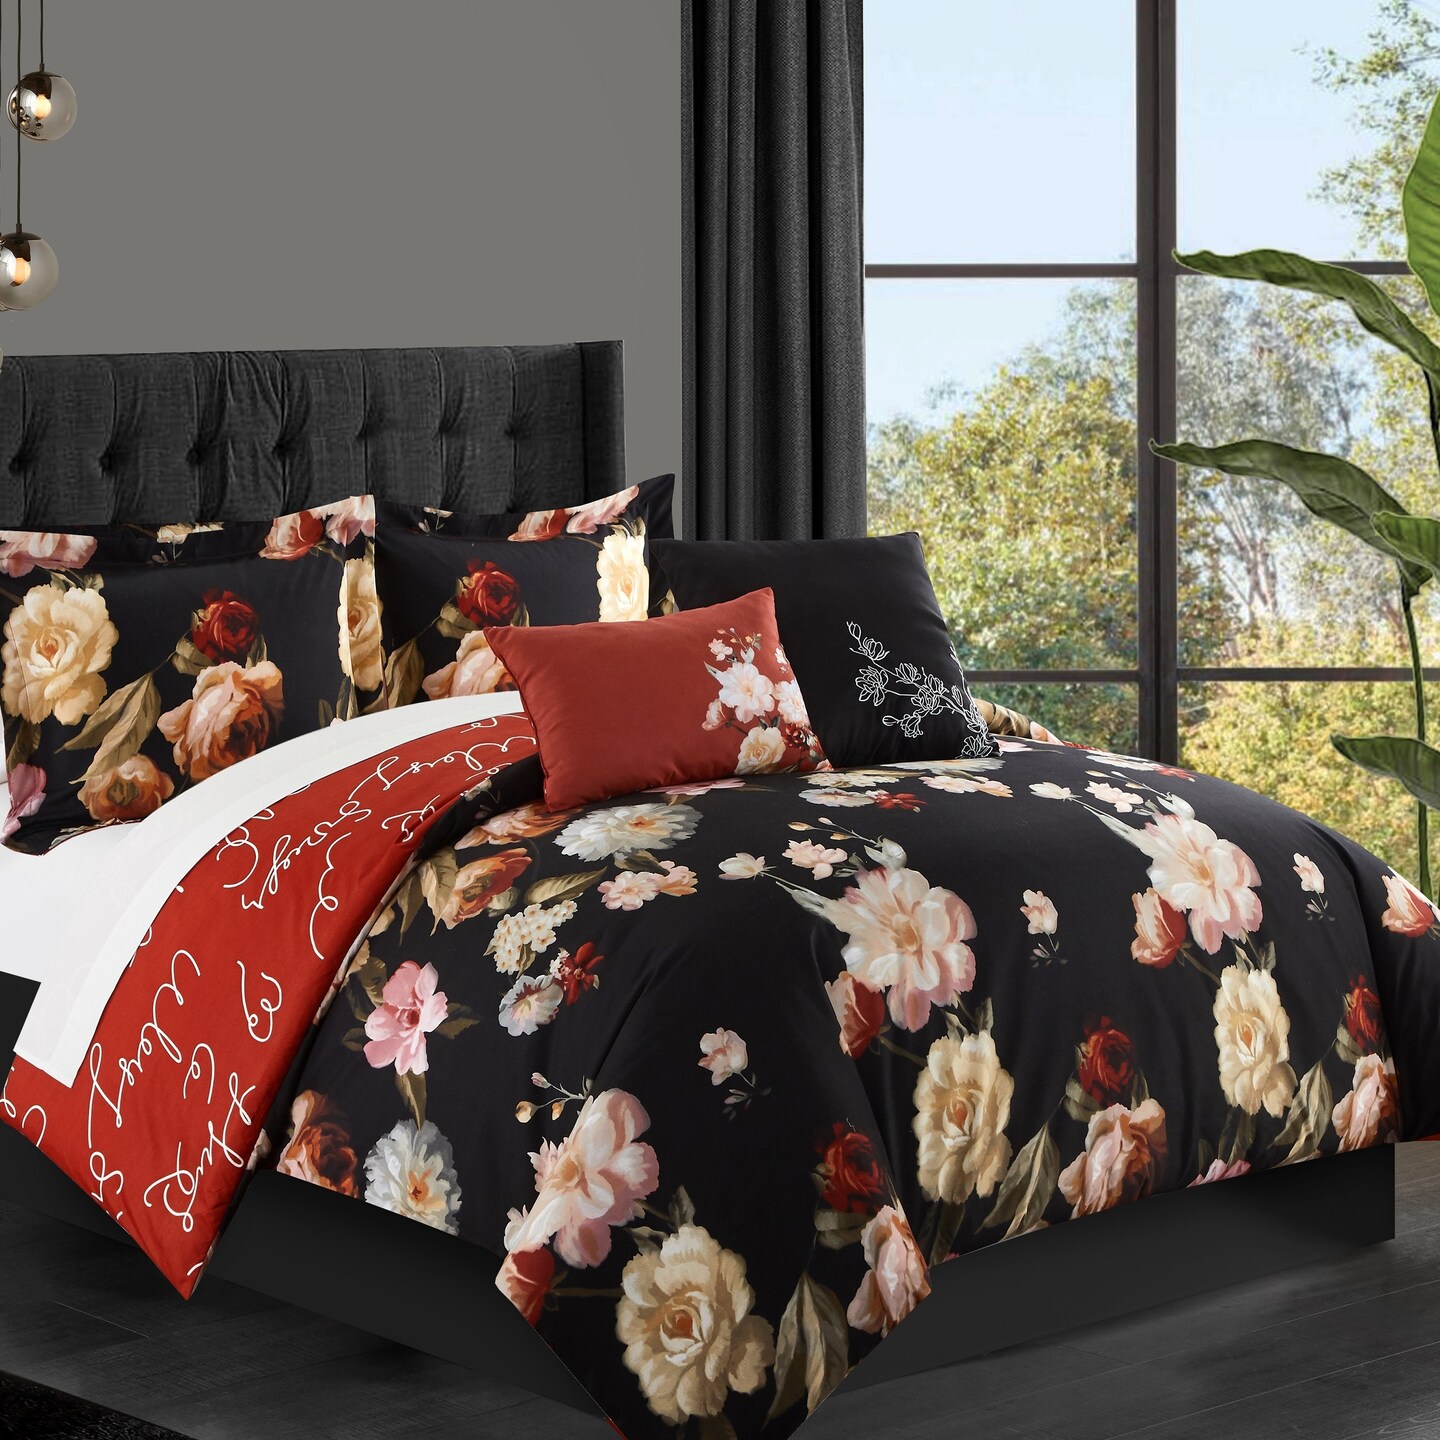 Chic Home Emeraude 3 Piece Reversible Quilt Set Floral Print Cursive Script Design Bedding